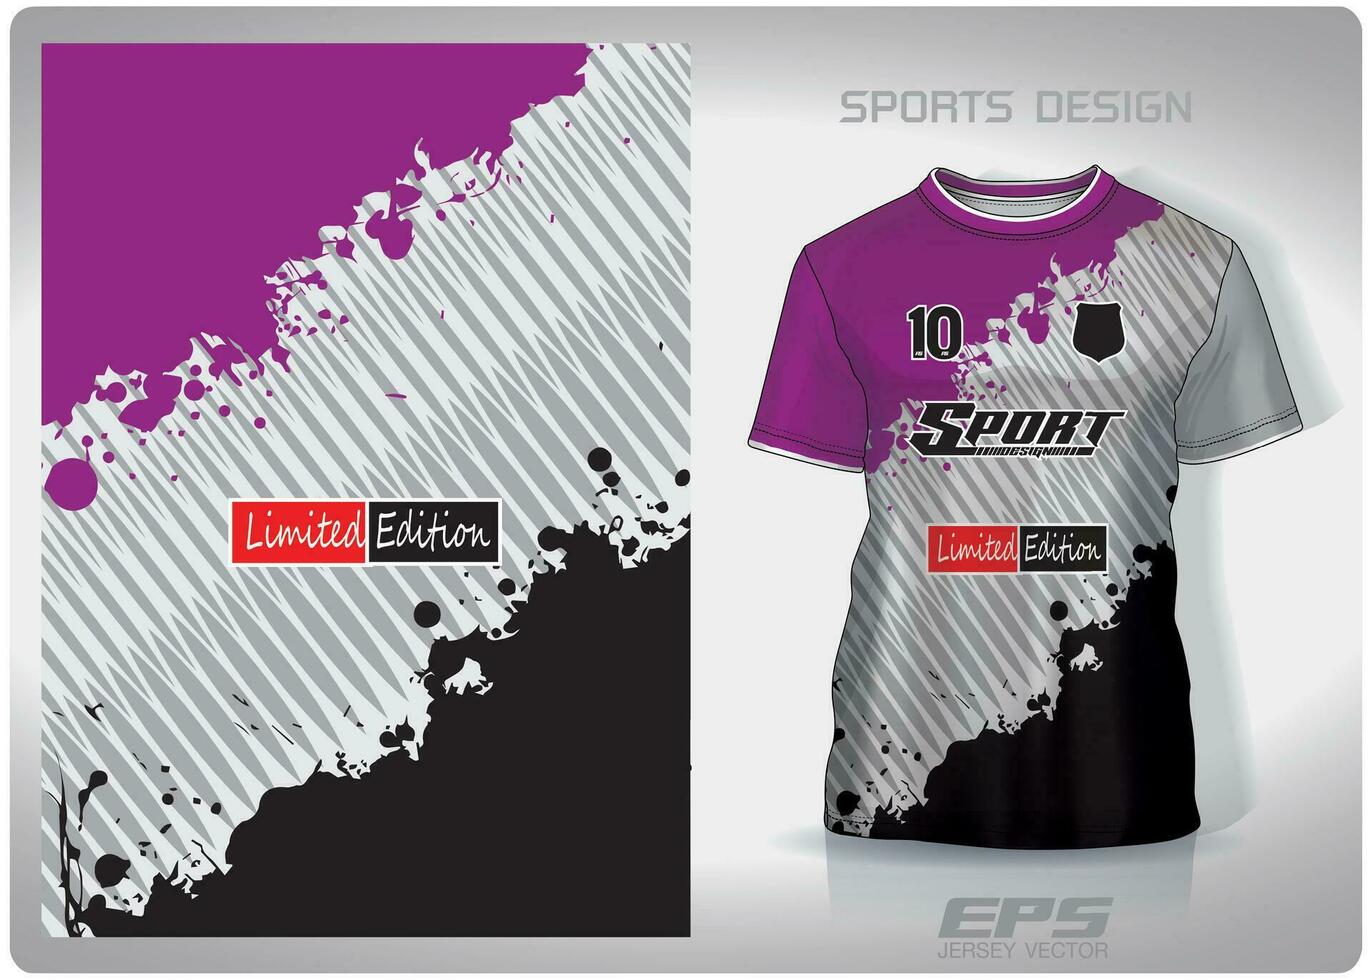 vektor sporter skjorta bakgrund bild.svart lila sallad borsta hårkam mönster design, illustration, textil- bakgrund för sporter t-shirt, fotboll jersey skjorta